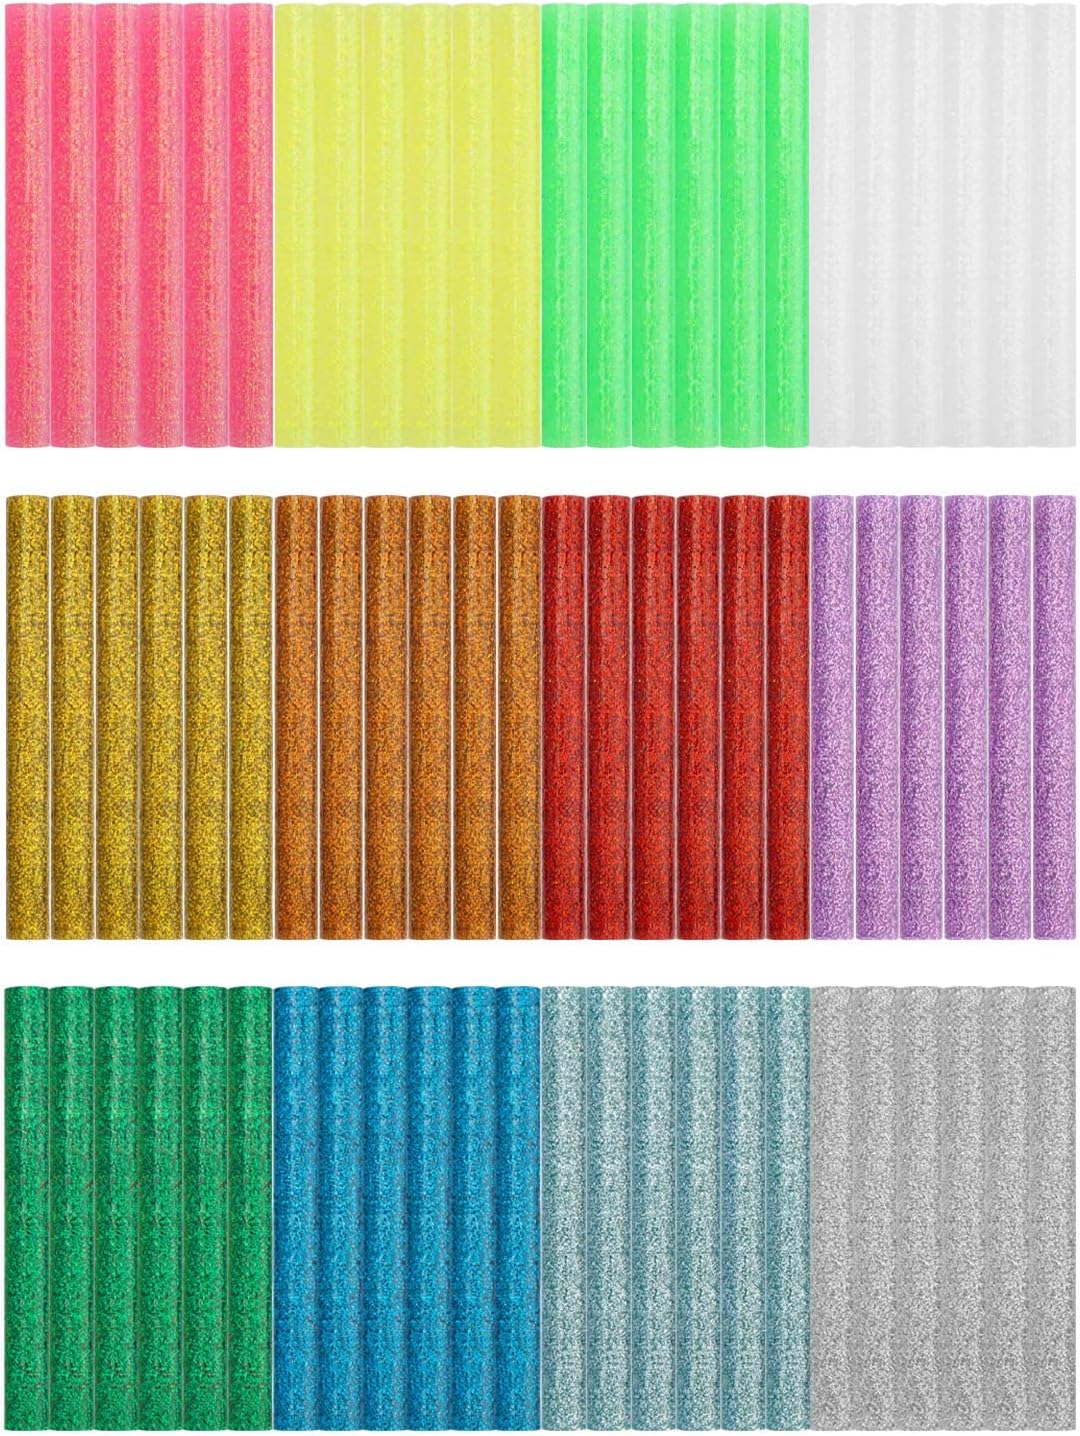 Gartful 72PCS Glitter Hot Glue Sticks - 0.4x3.9 Colored sprinkle Hot Melt  Glue Sticks, Full